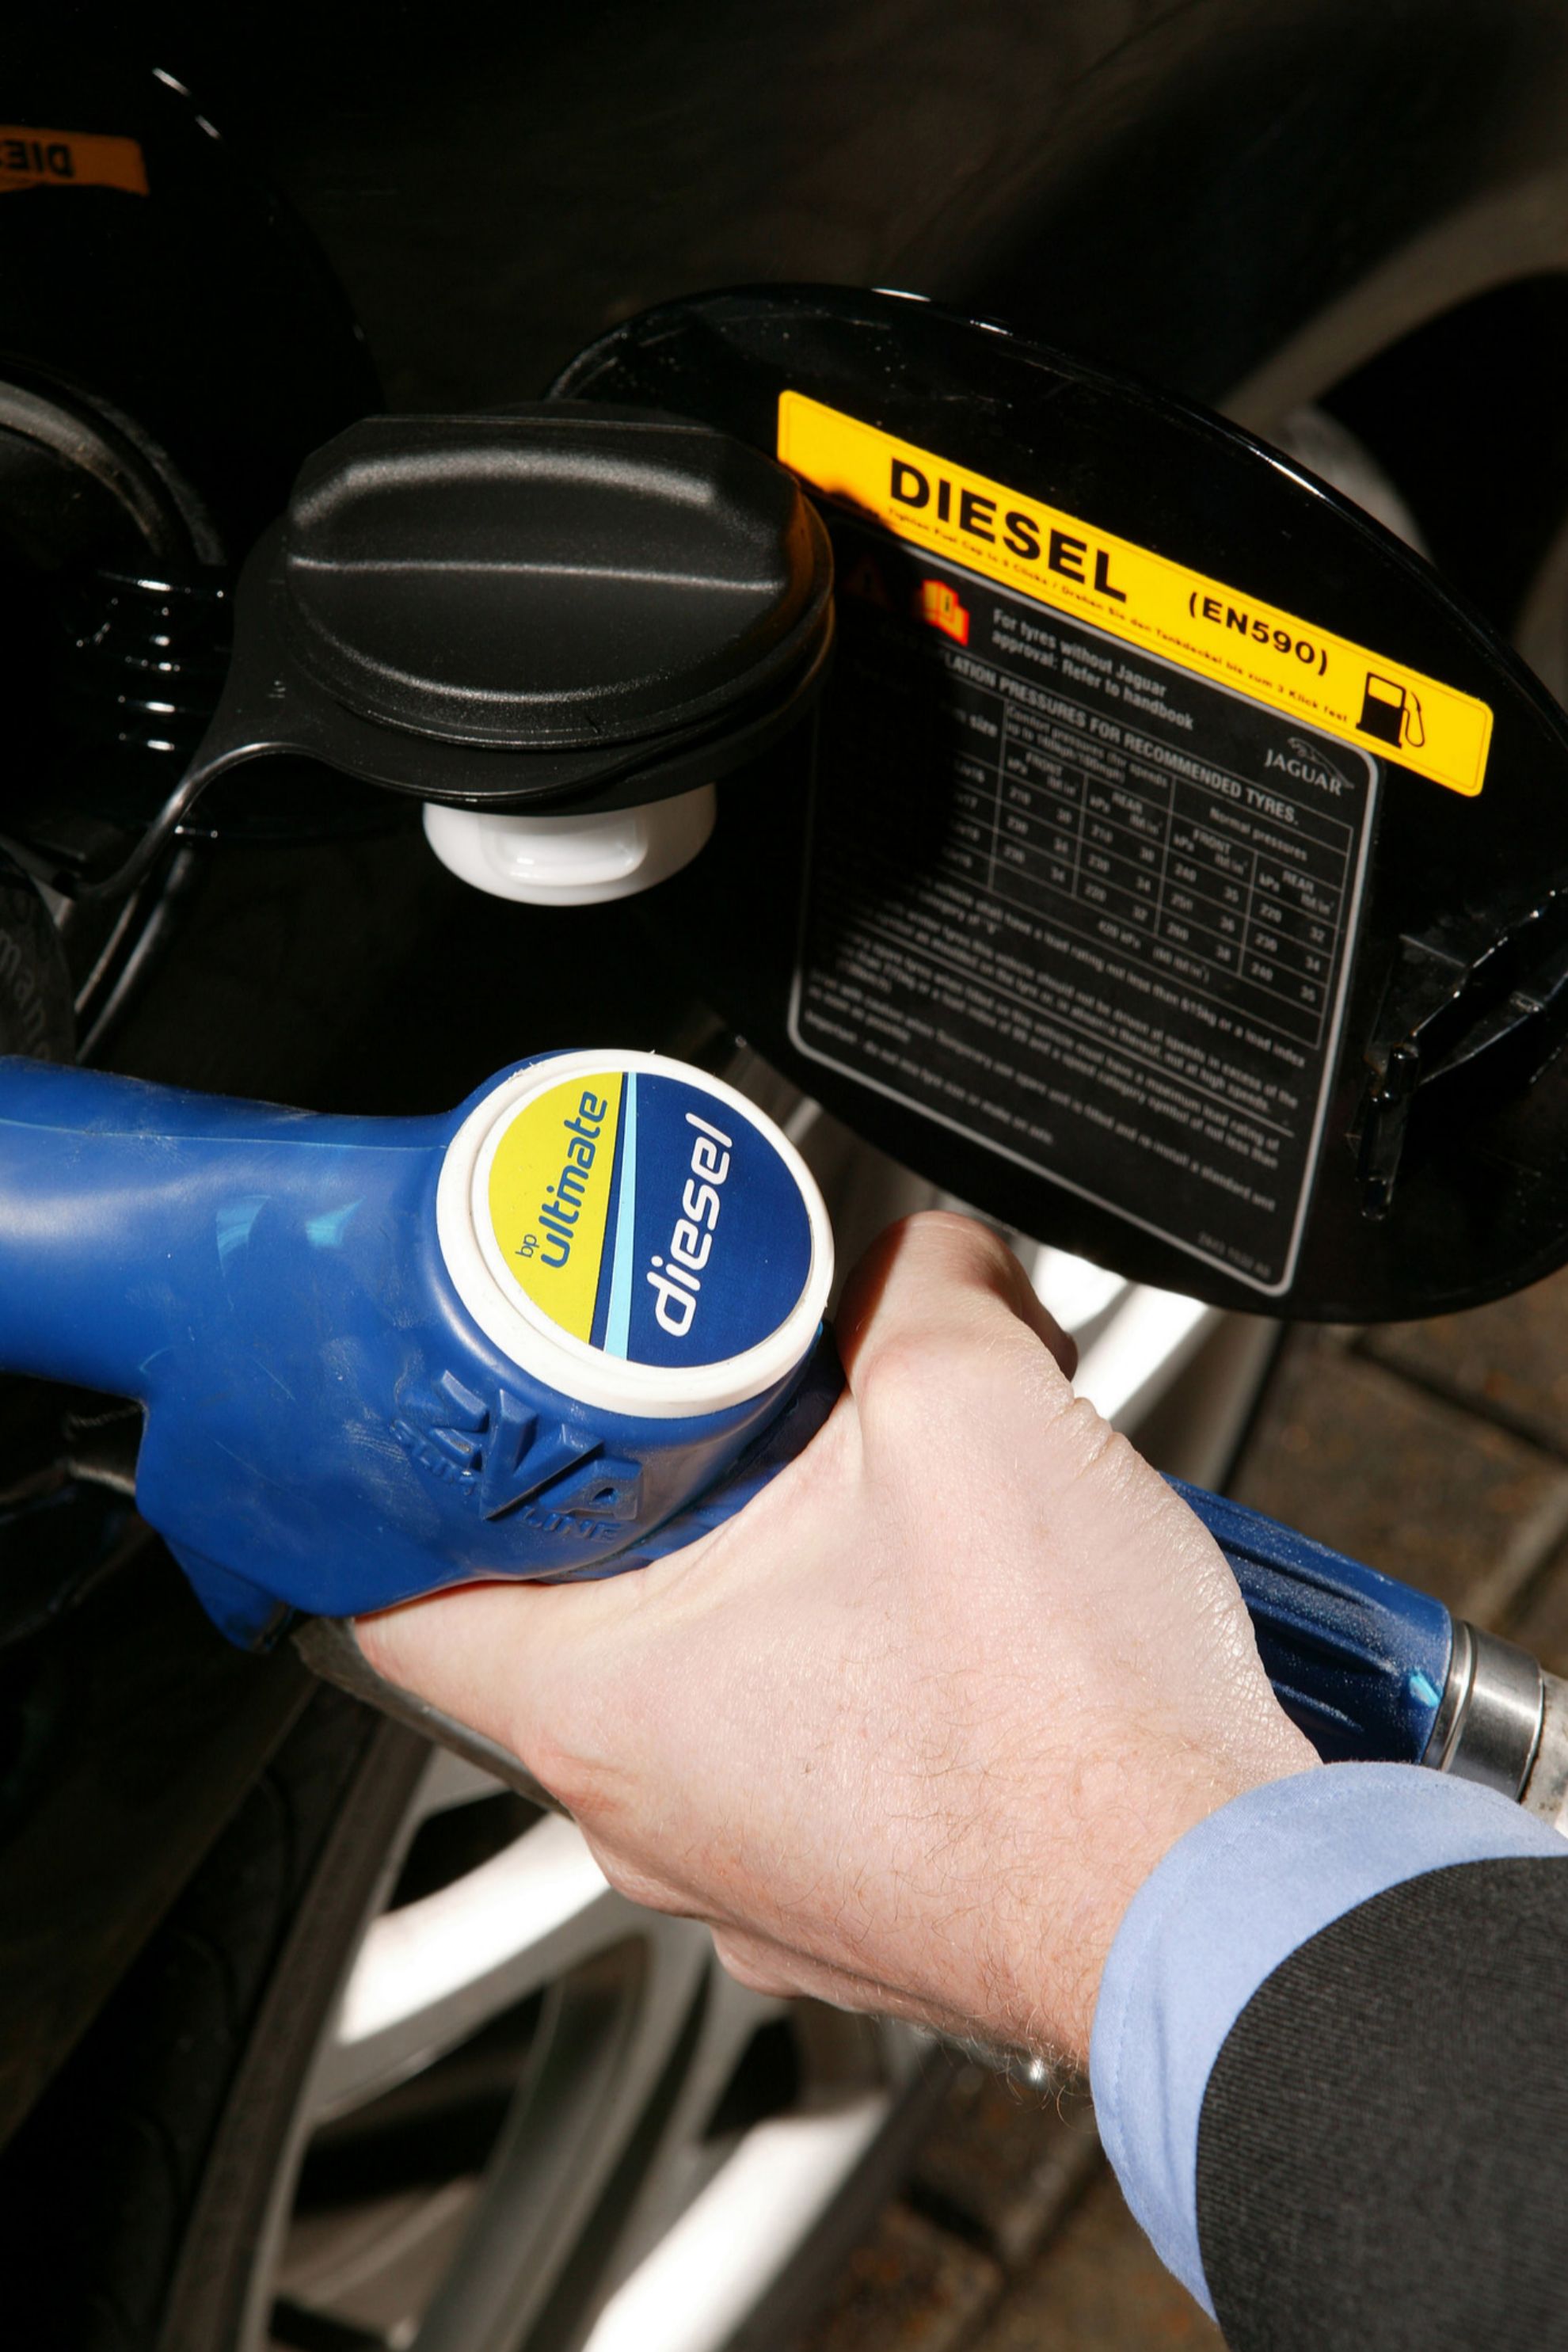 descuento en gasolina - descuento en diesel - descuento en combustible - 10 centimos de descuento - repsol - cepsa - bp